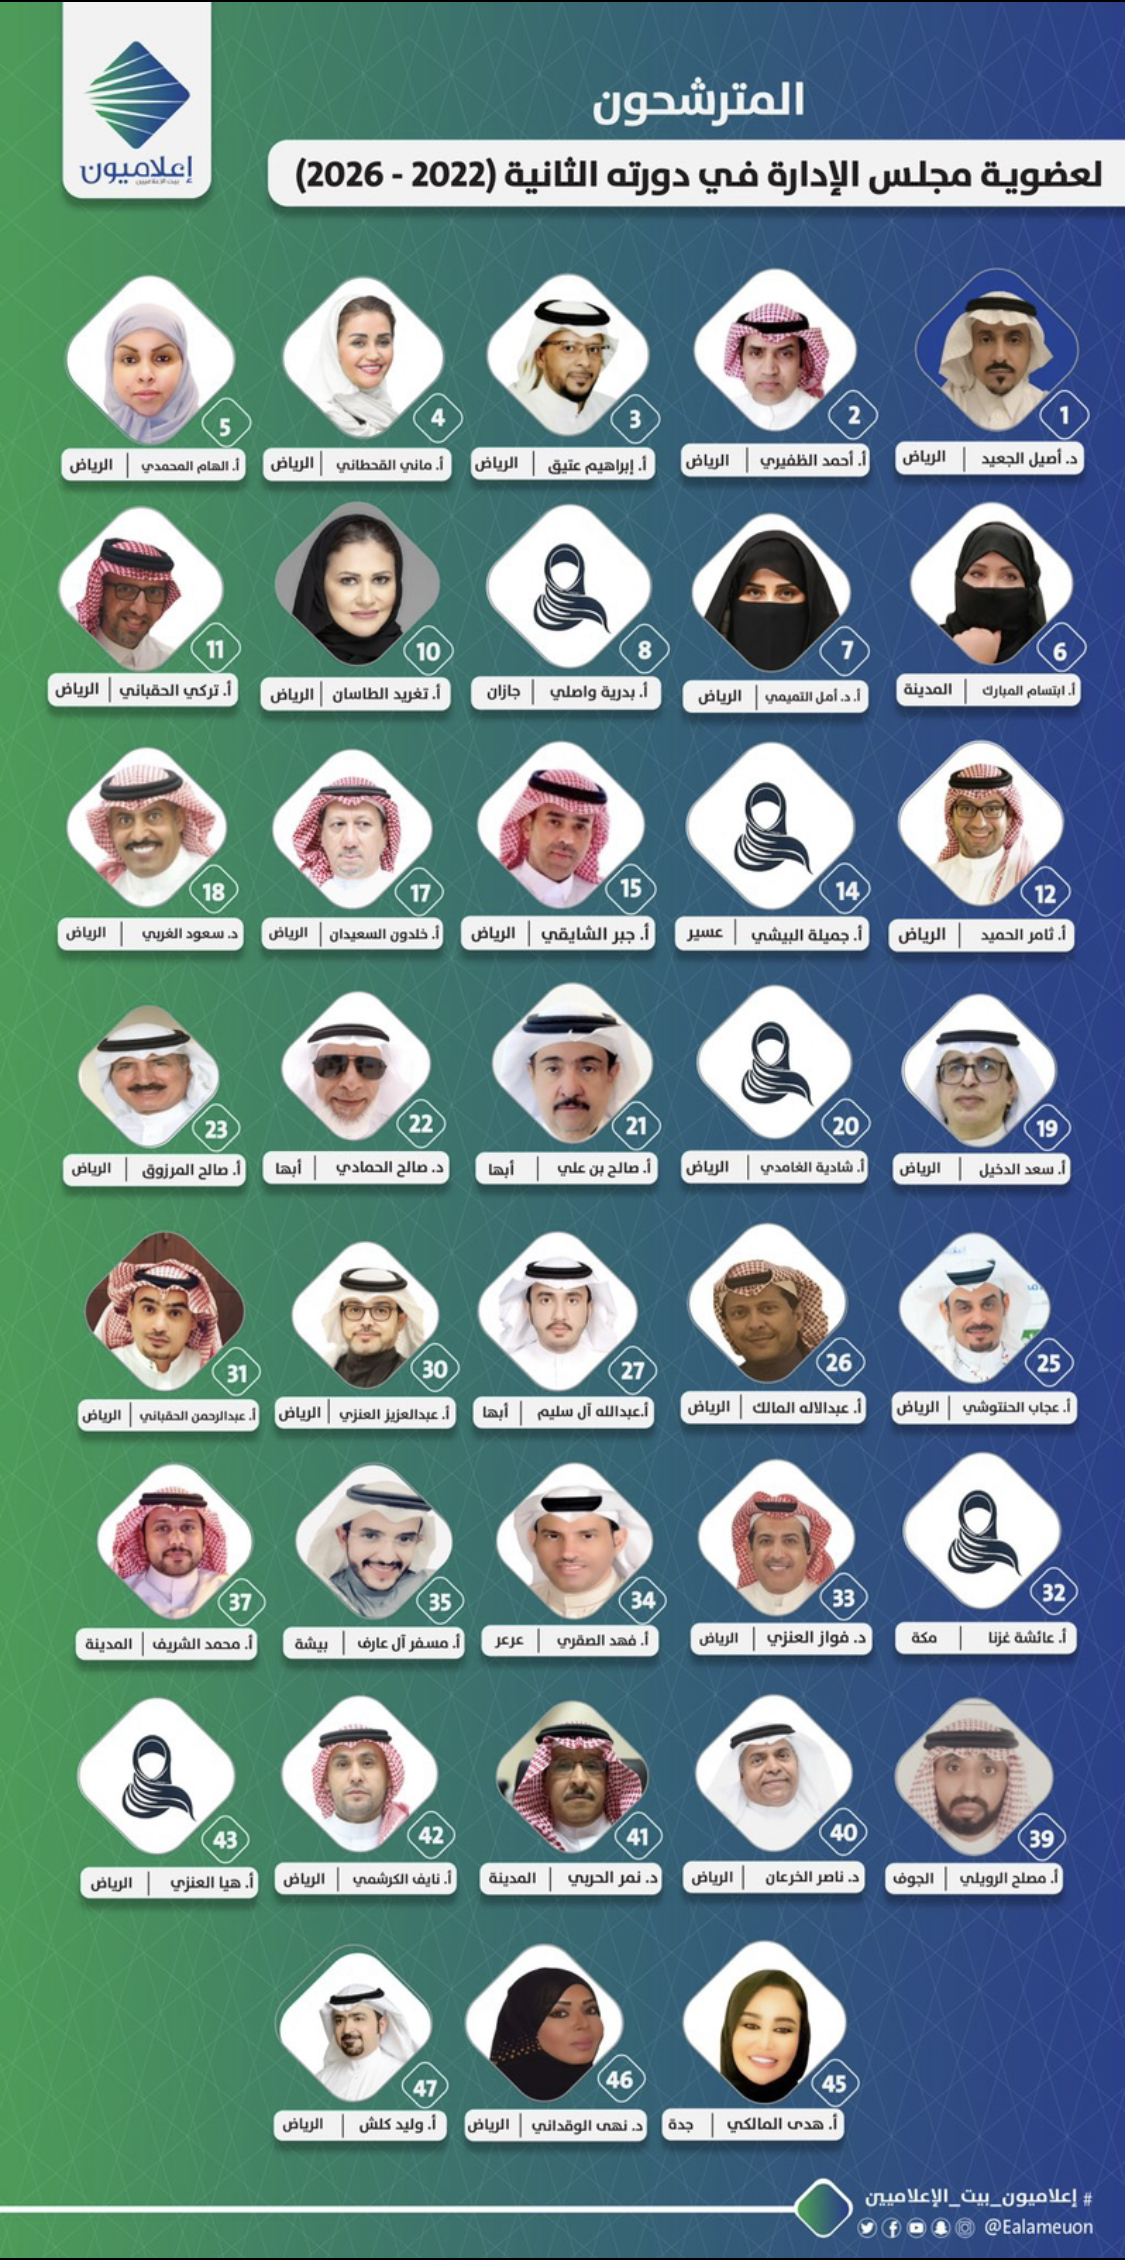 (العربية) 37 إعلاميًا يتنافسون على عضوية مجلس إدارة جمعية “إعلاميون” في دورته الثانية (2022 – 2026)